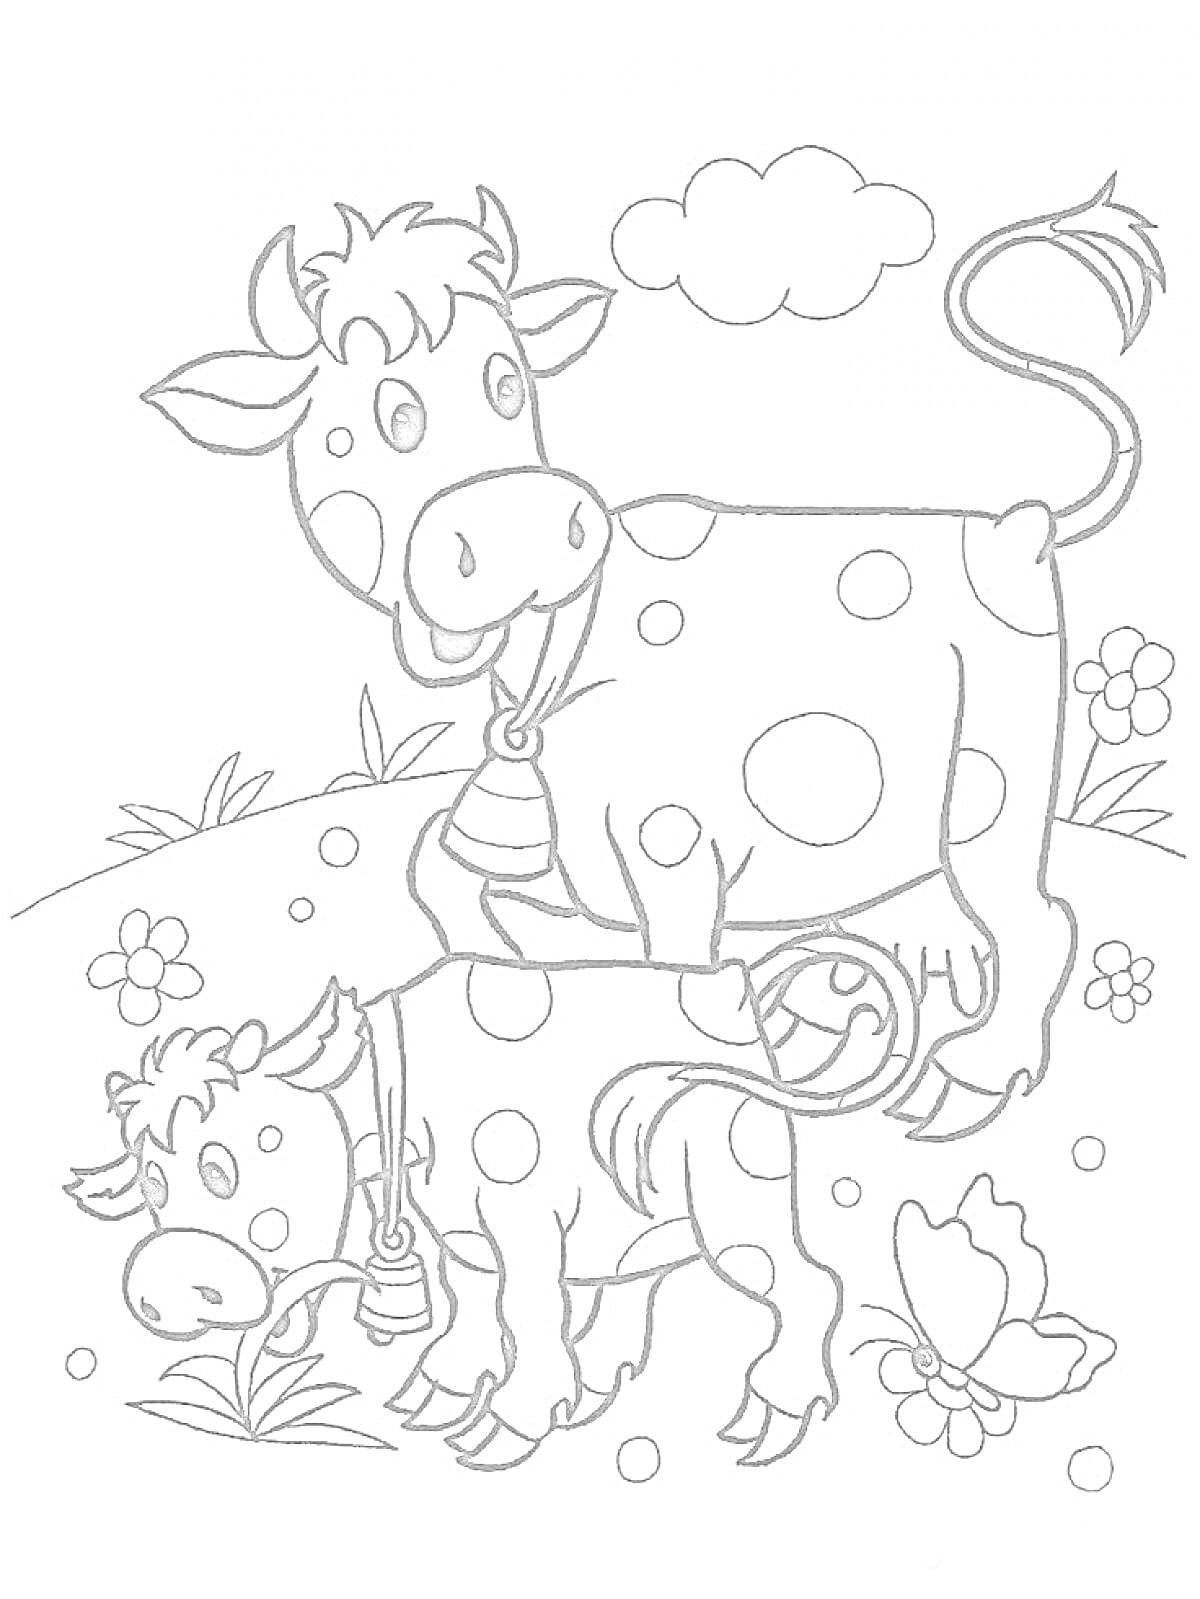 Раскраска Корова и теленок на лугу с цветами и бабочкой под облаком